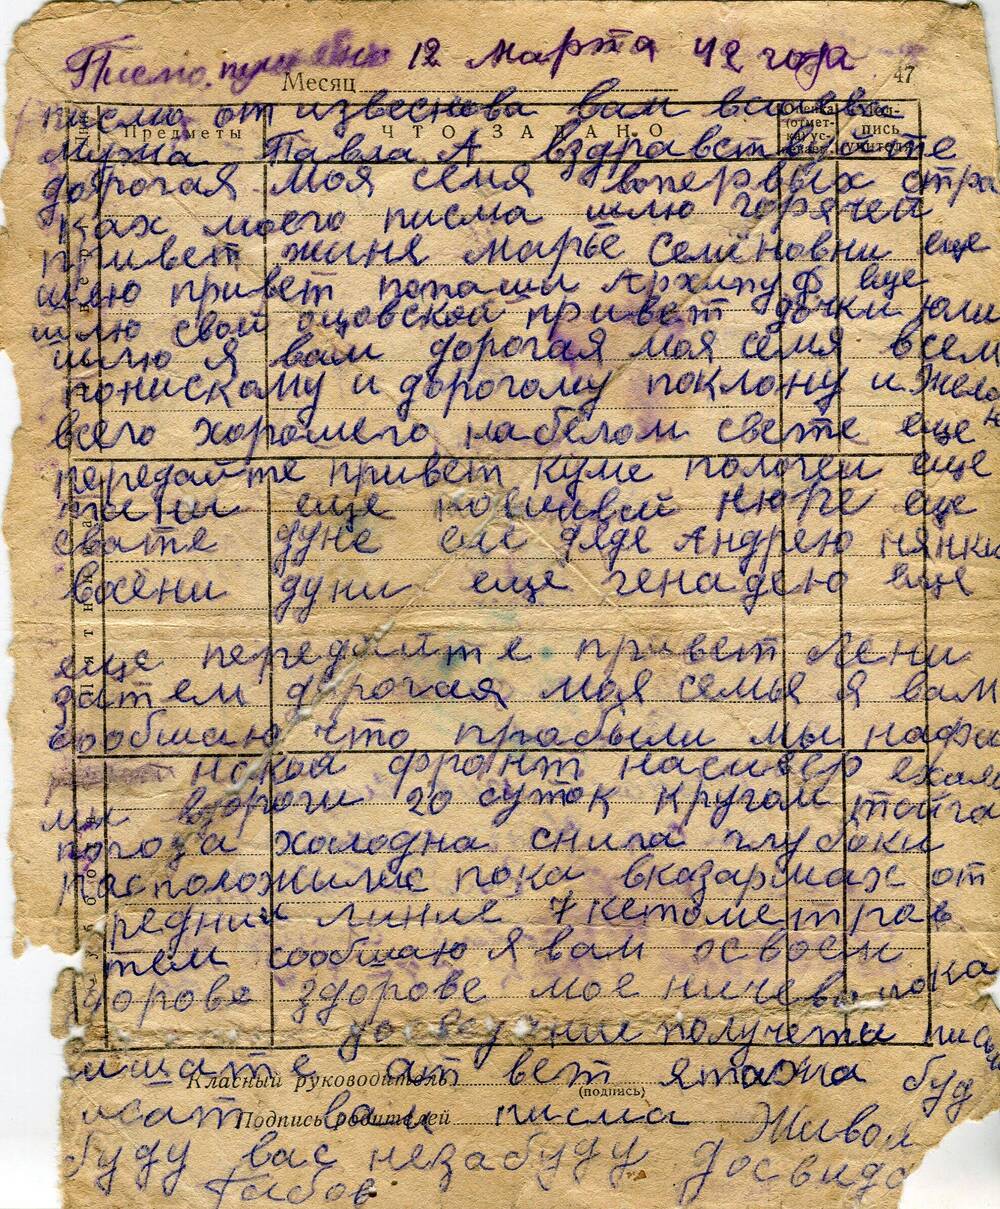 Письмо с фронта Великой Отечественной войны от Габова Павла Архиповича своей семье. Написано 12 марта 1942 года.